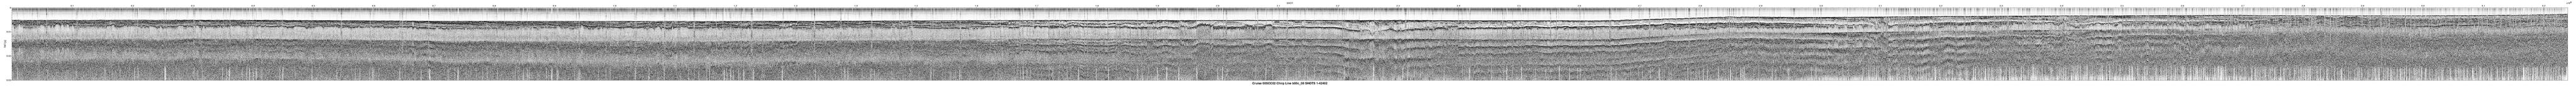 00SCC02 b00c_08 seismic profile image